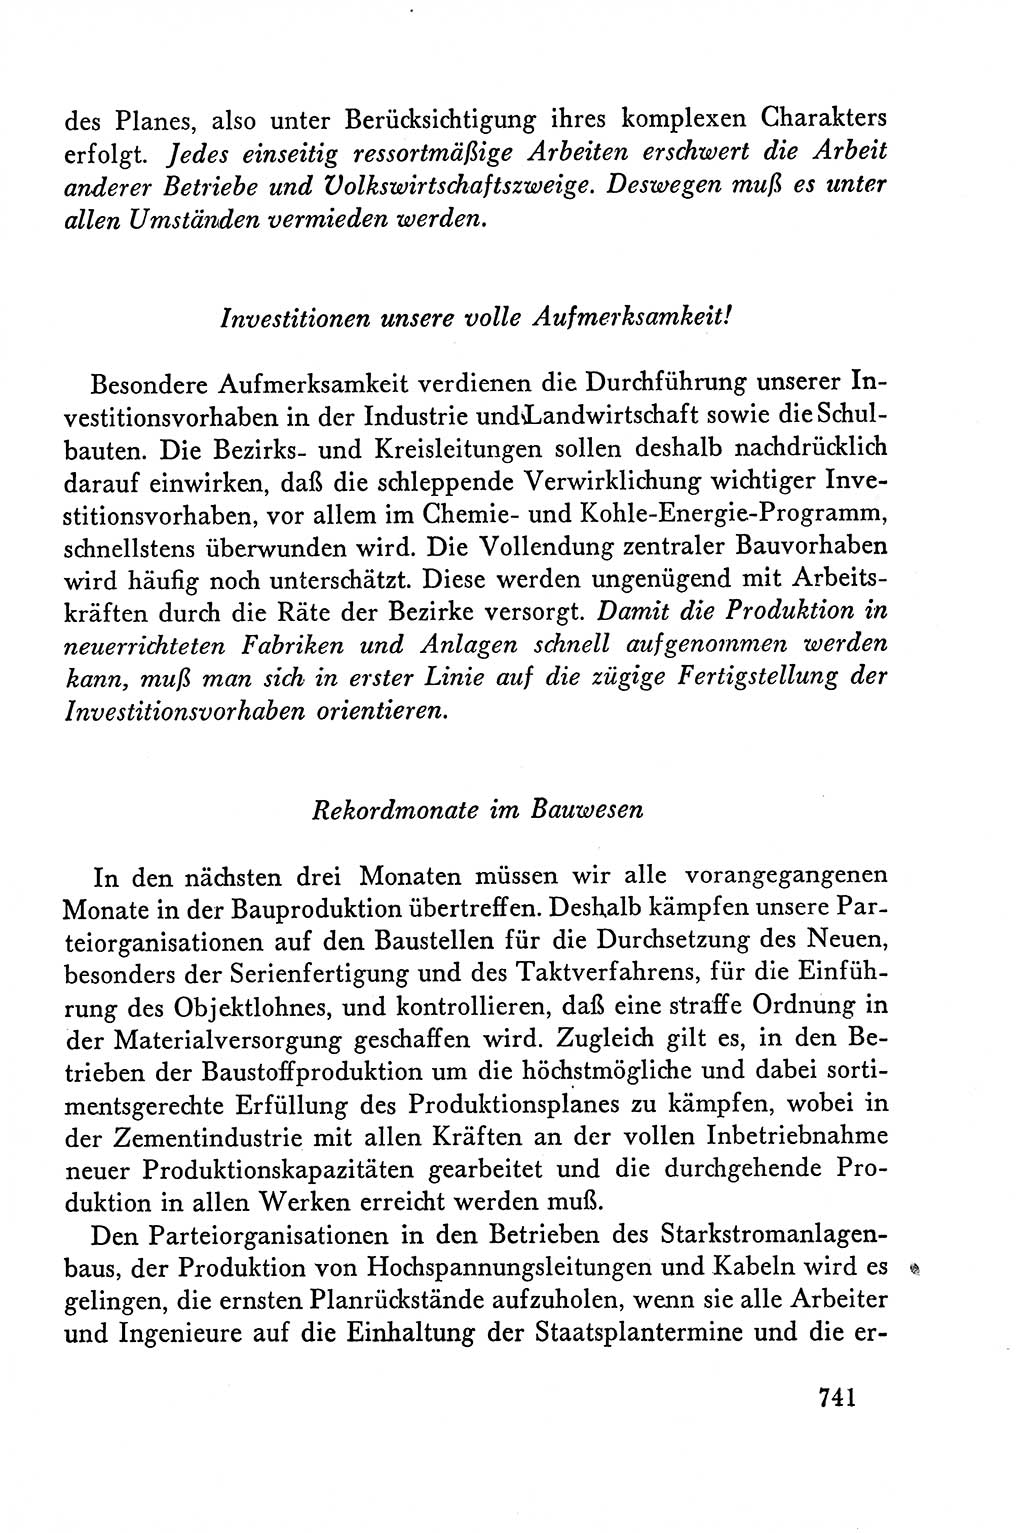 Dokumente der Sozialistischen Einheitspartei Deutschlands (SED) [Deutsche Demokratische Republik (DDR)] 1958-1959, Seite 741 (Dok. SED DDR 1958-1959, S. 741)